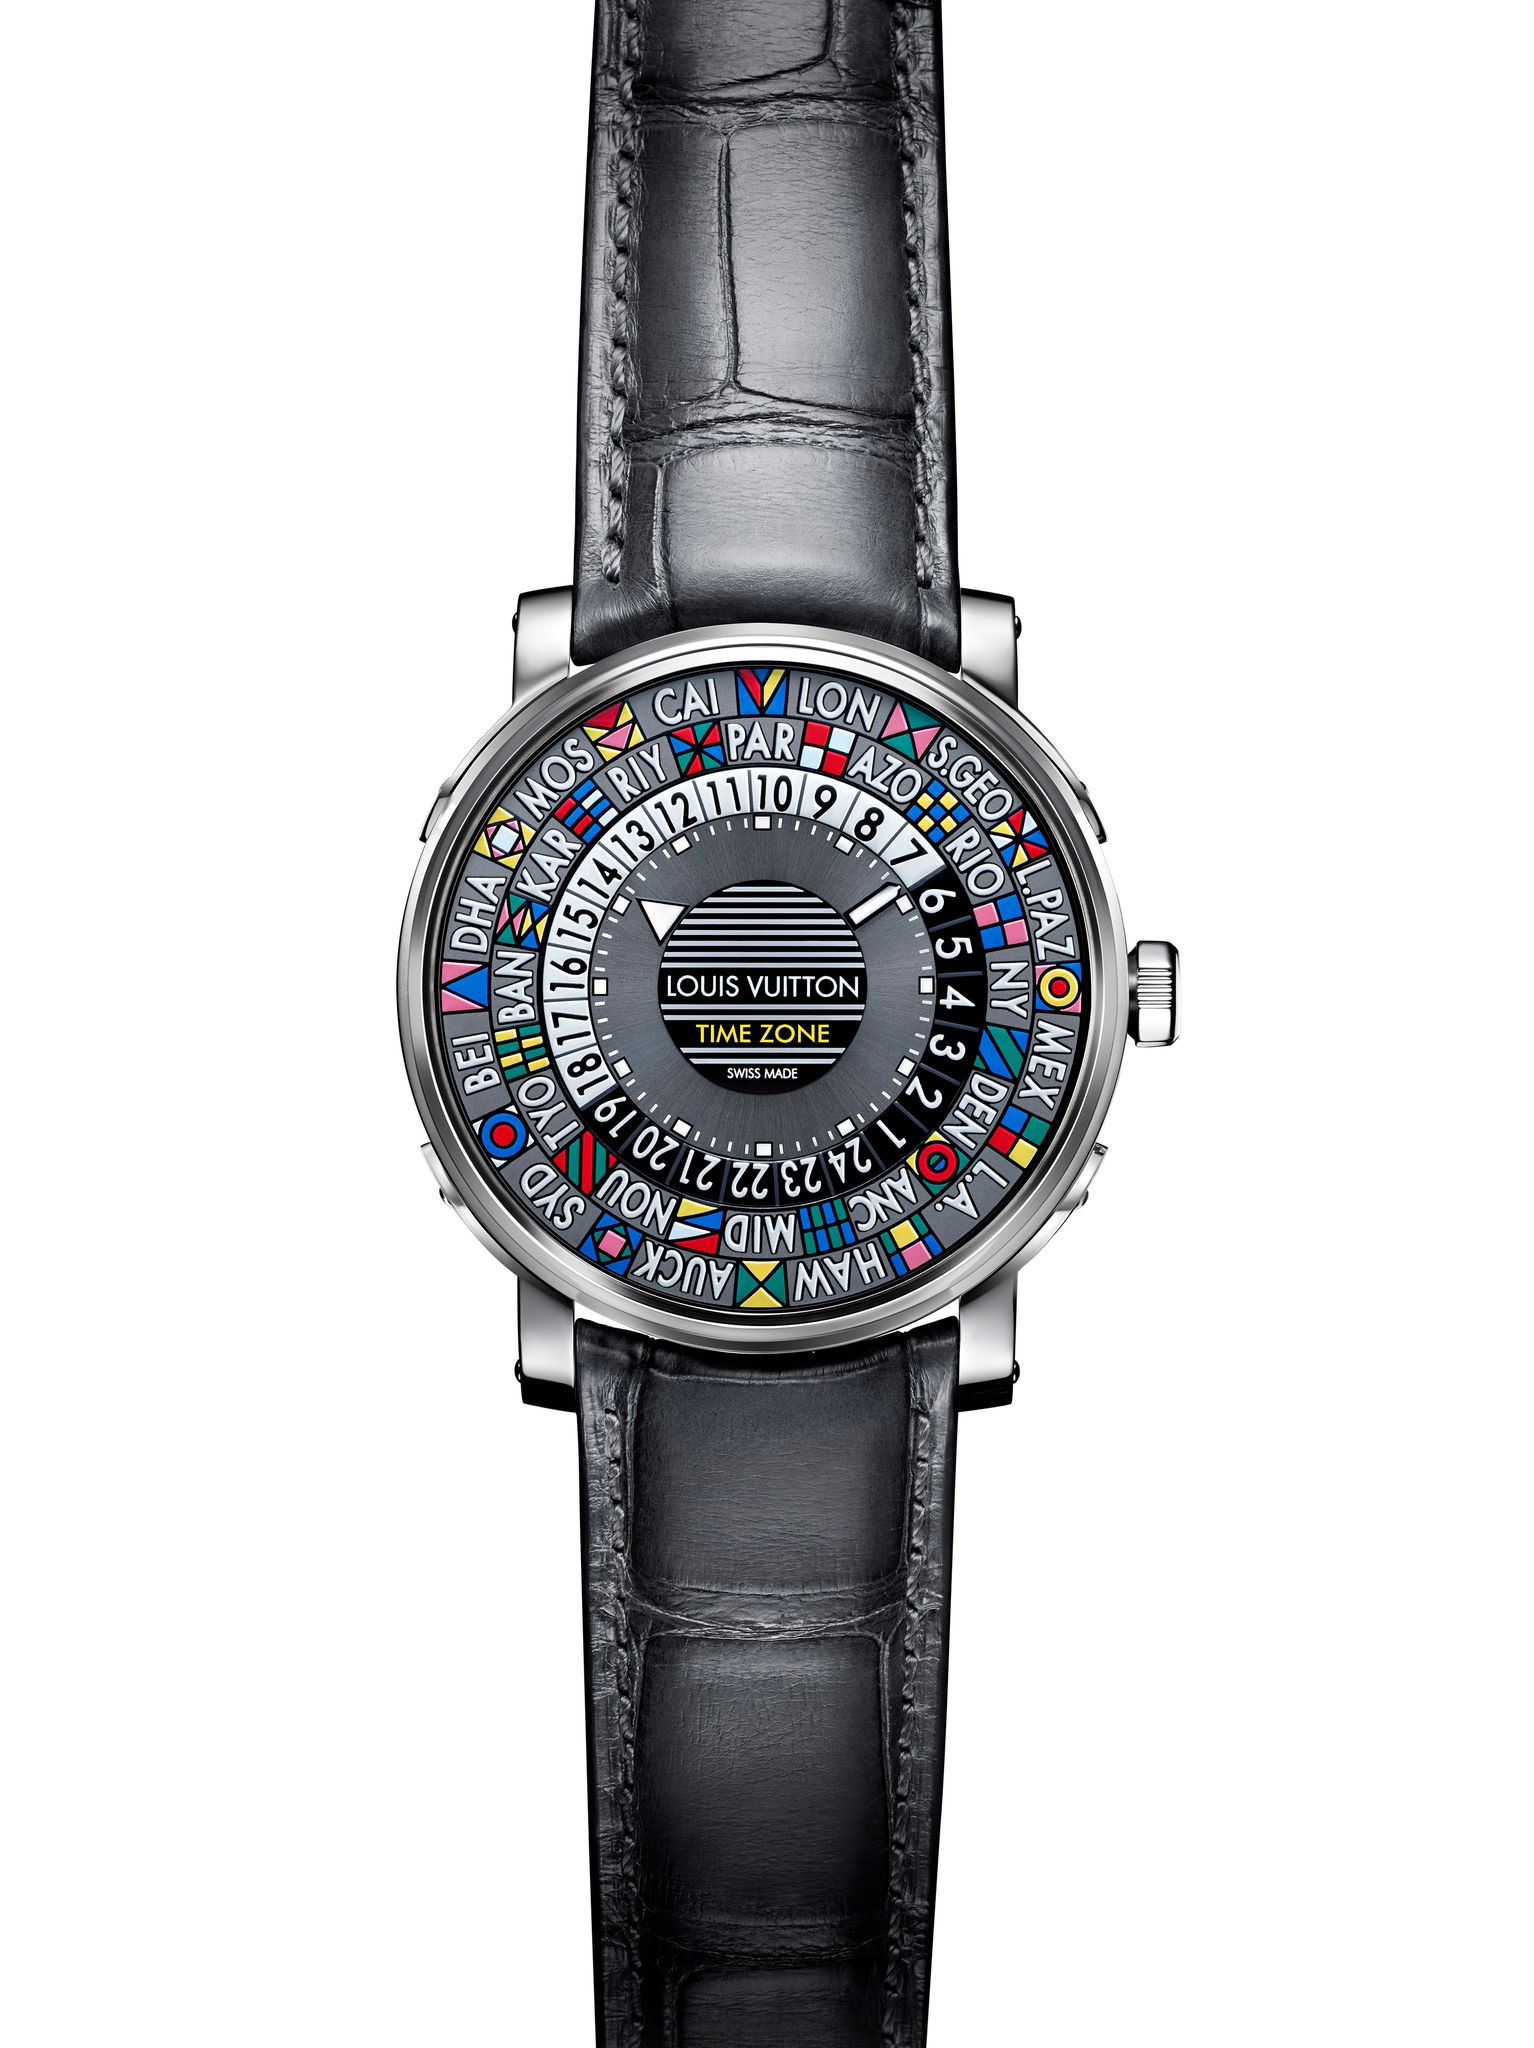 Louis Vuitton - Montre Louis Vuitton Escale Time Zone